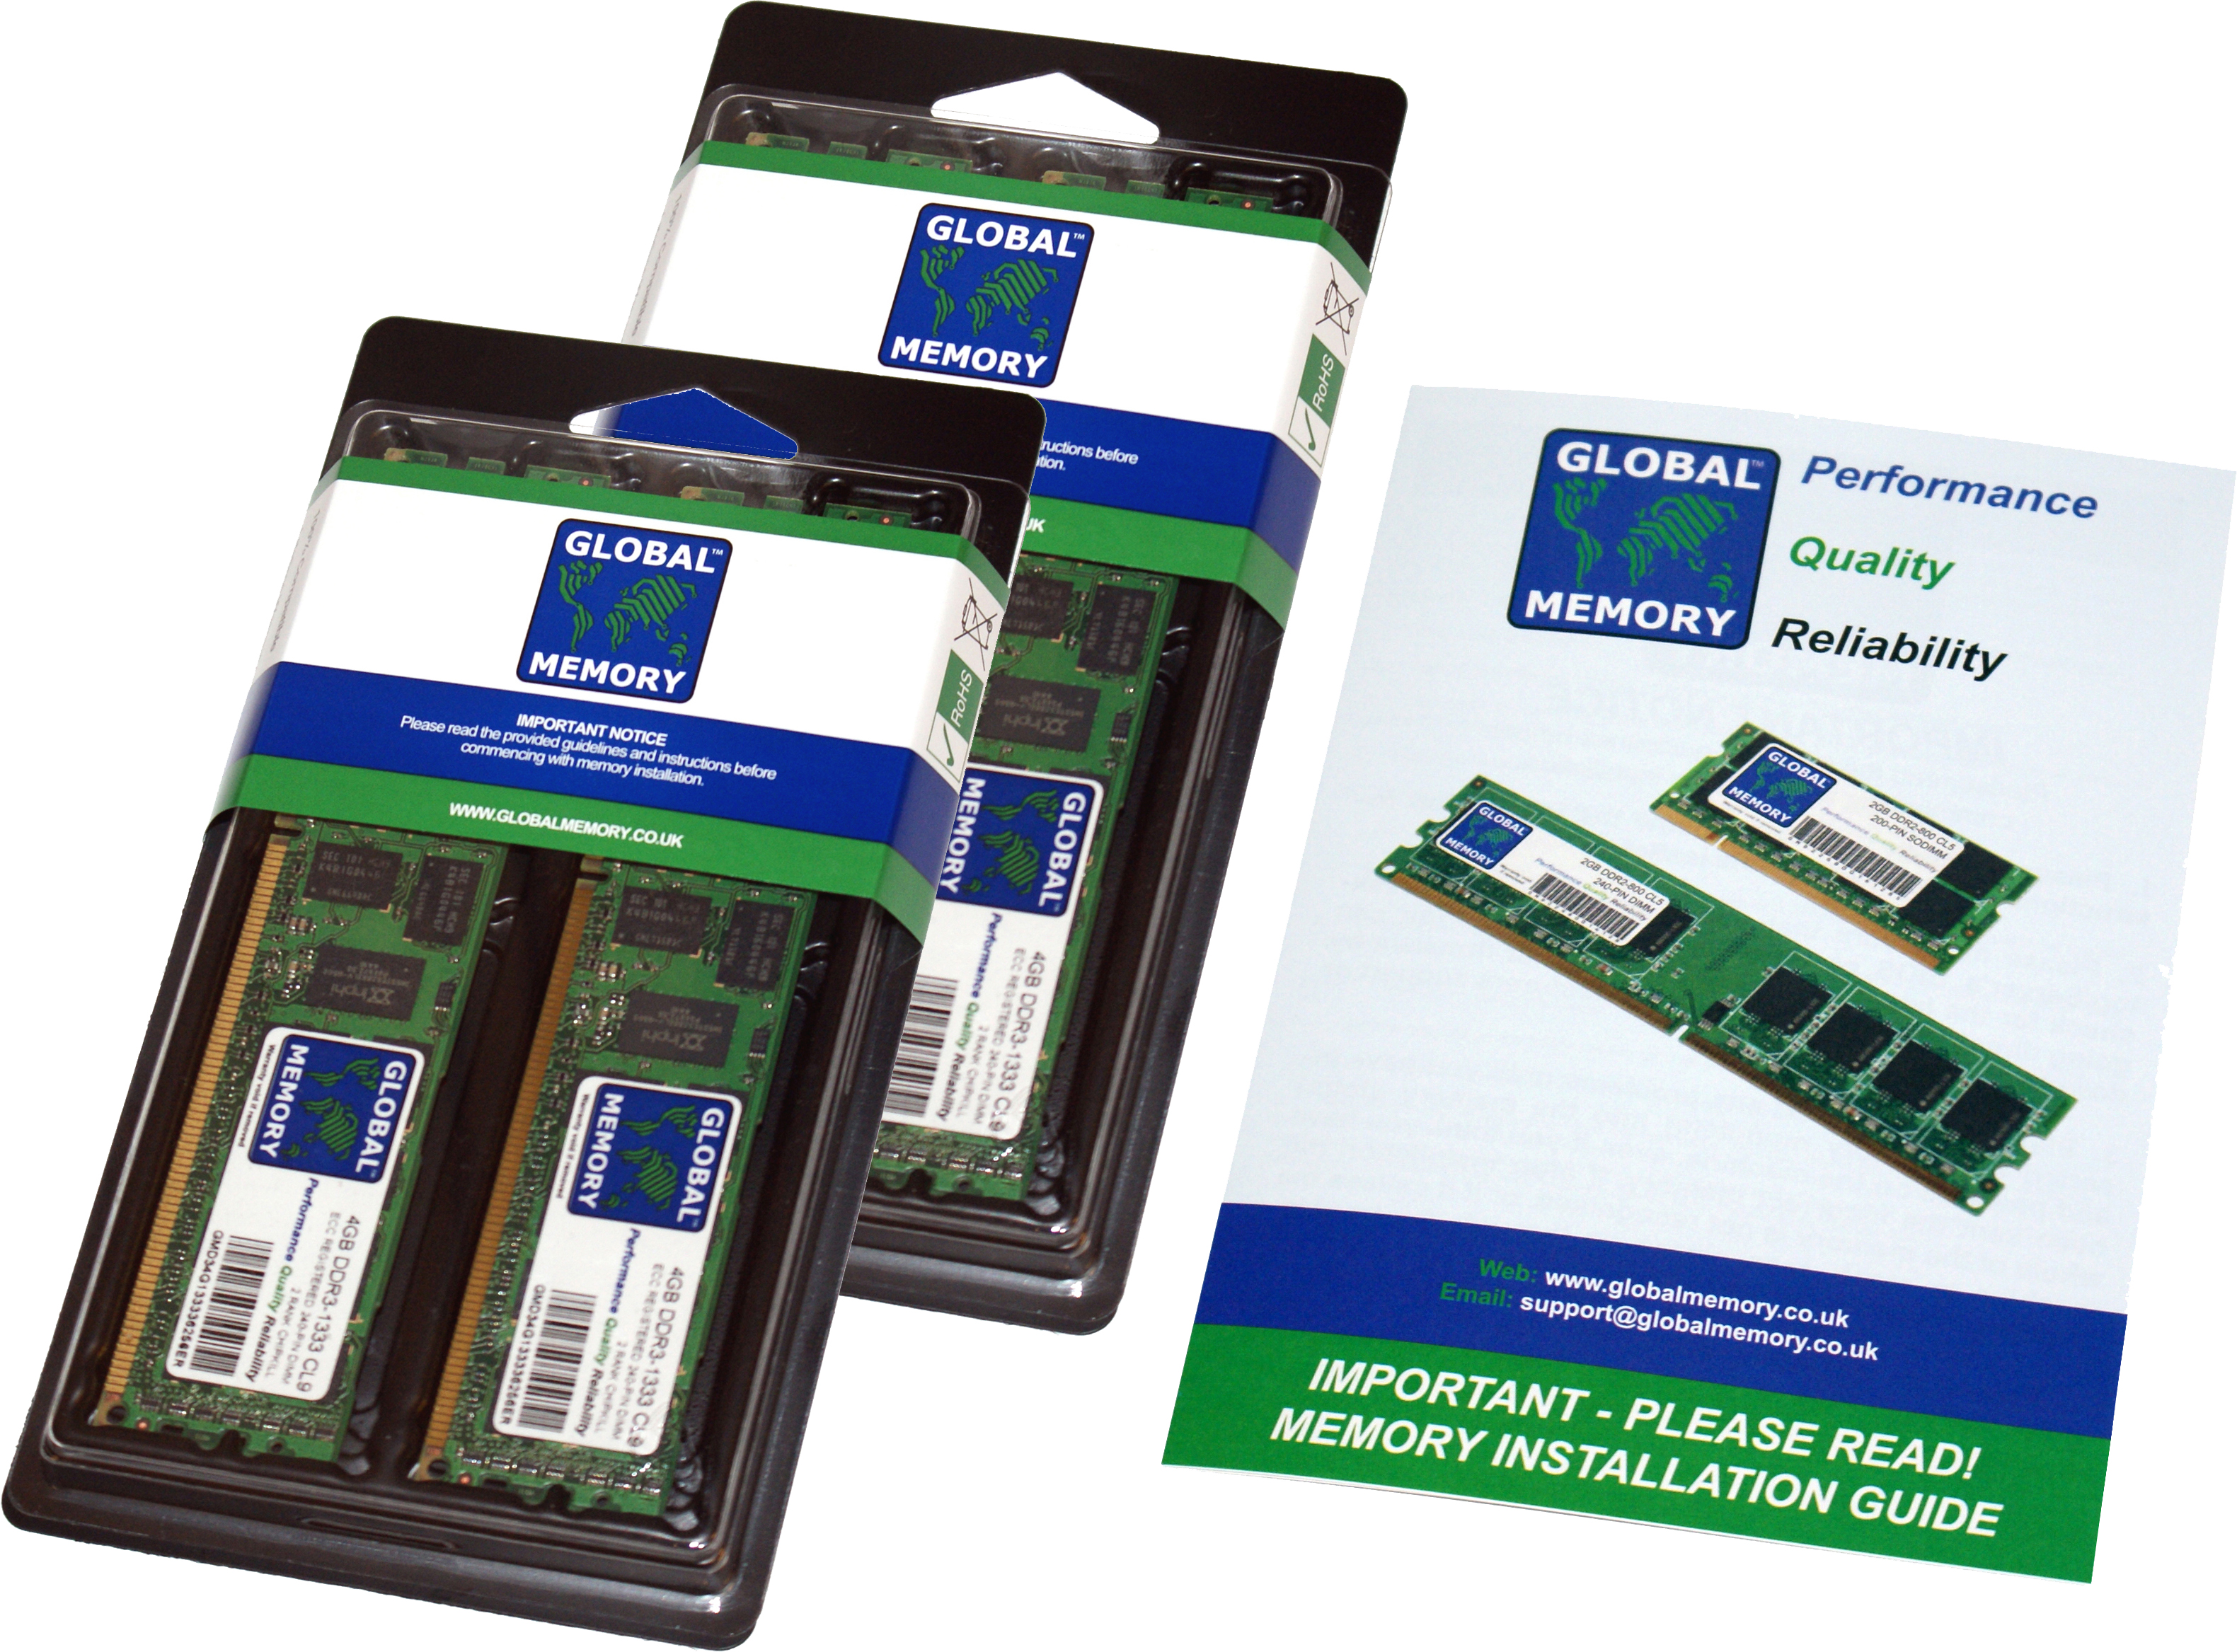 256GB (4 x 64GB) DDR4 3200MHz PC4-25600 288-PIN LOAD REDUCED ECC REGISTERED DIMM (LRDIMM) MEMORY RAM KIT FOR FUJITSU SERVERS/WORKSTATIONS (16 RANK KIT CHIPKILL)